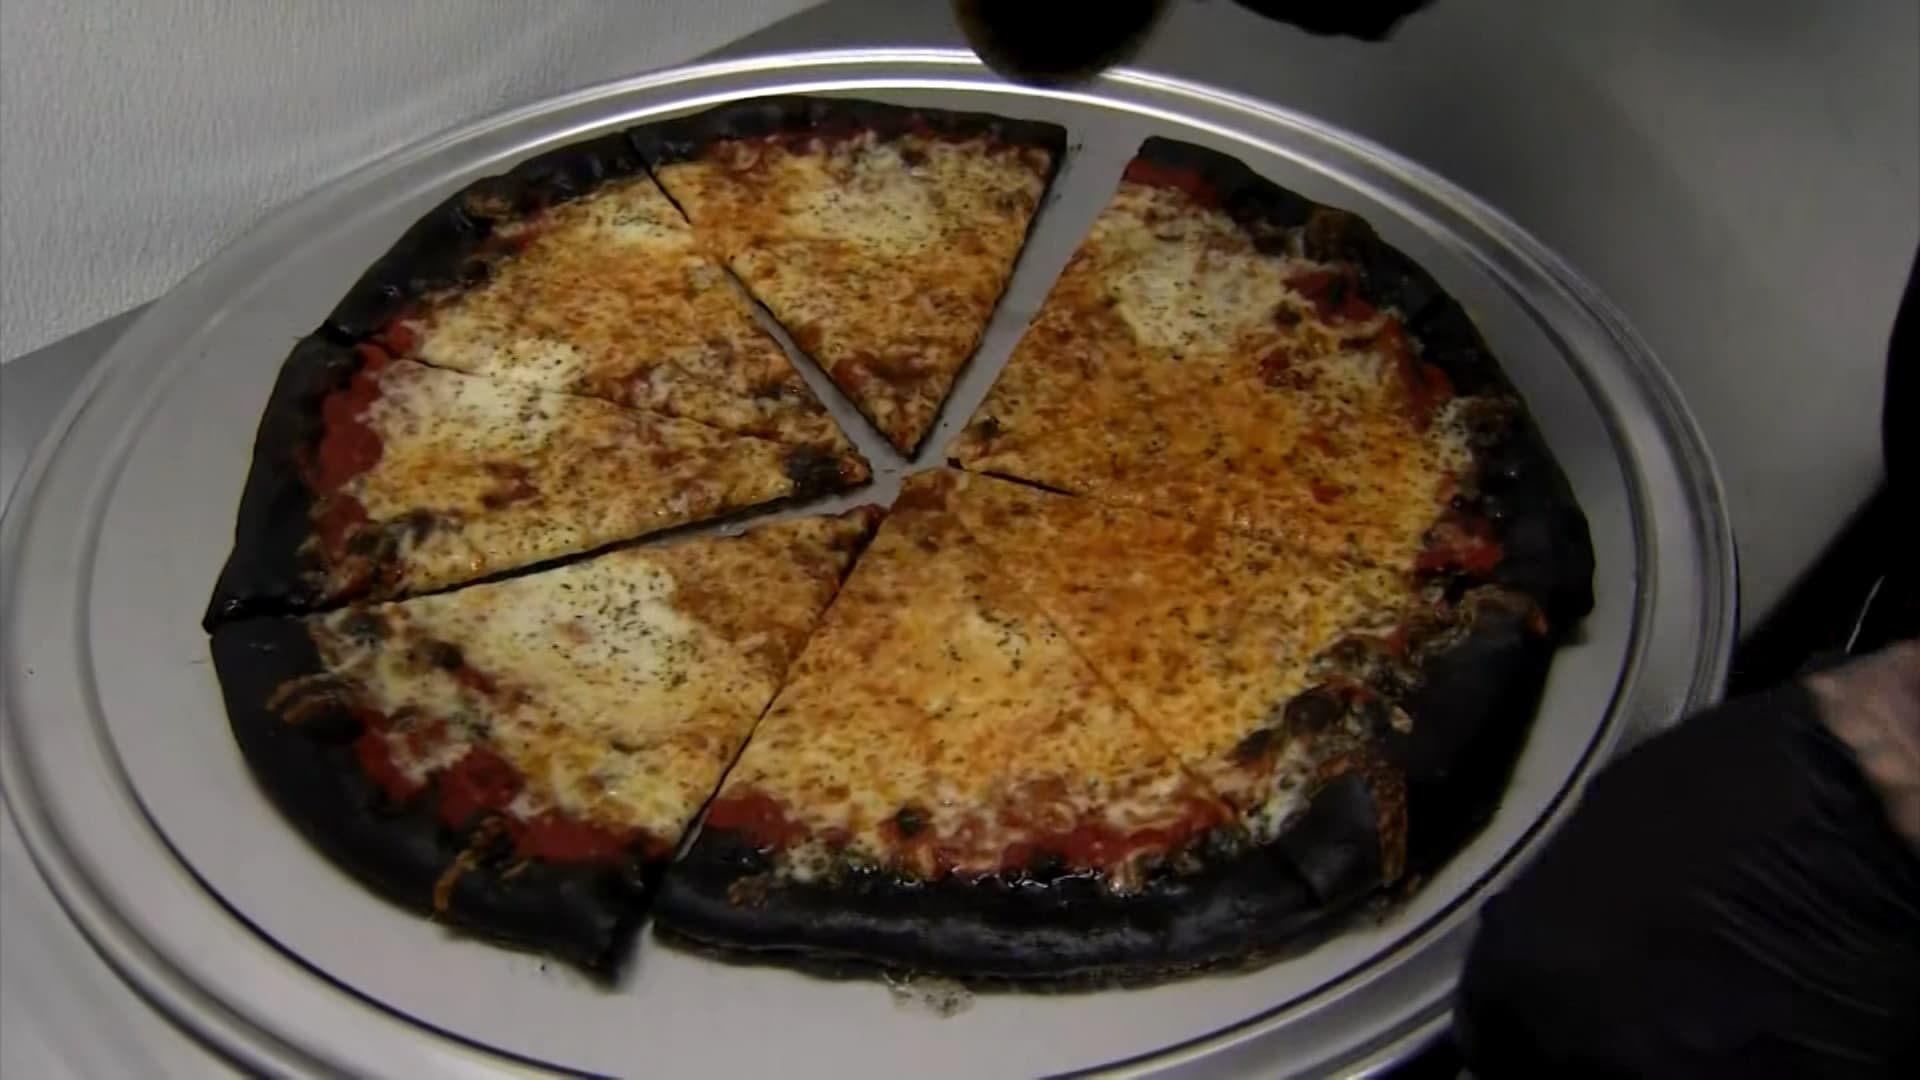 مطعم أمريكي يقدم “بيتزا جريمة القتل” بعجينة سوداء.. كيف هو طعمها؟